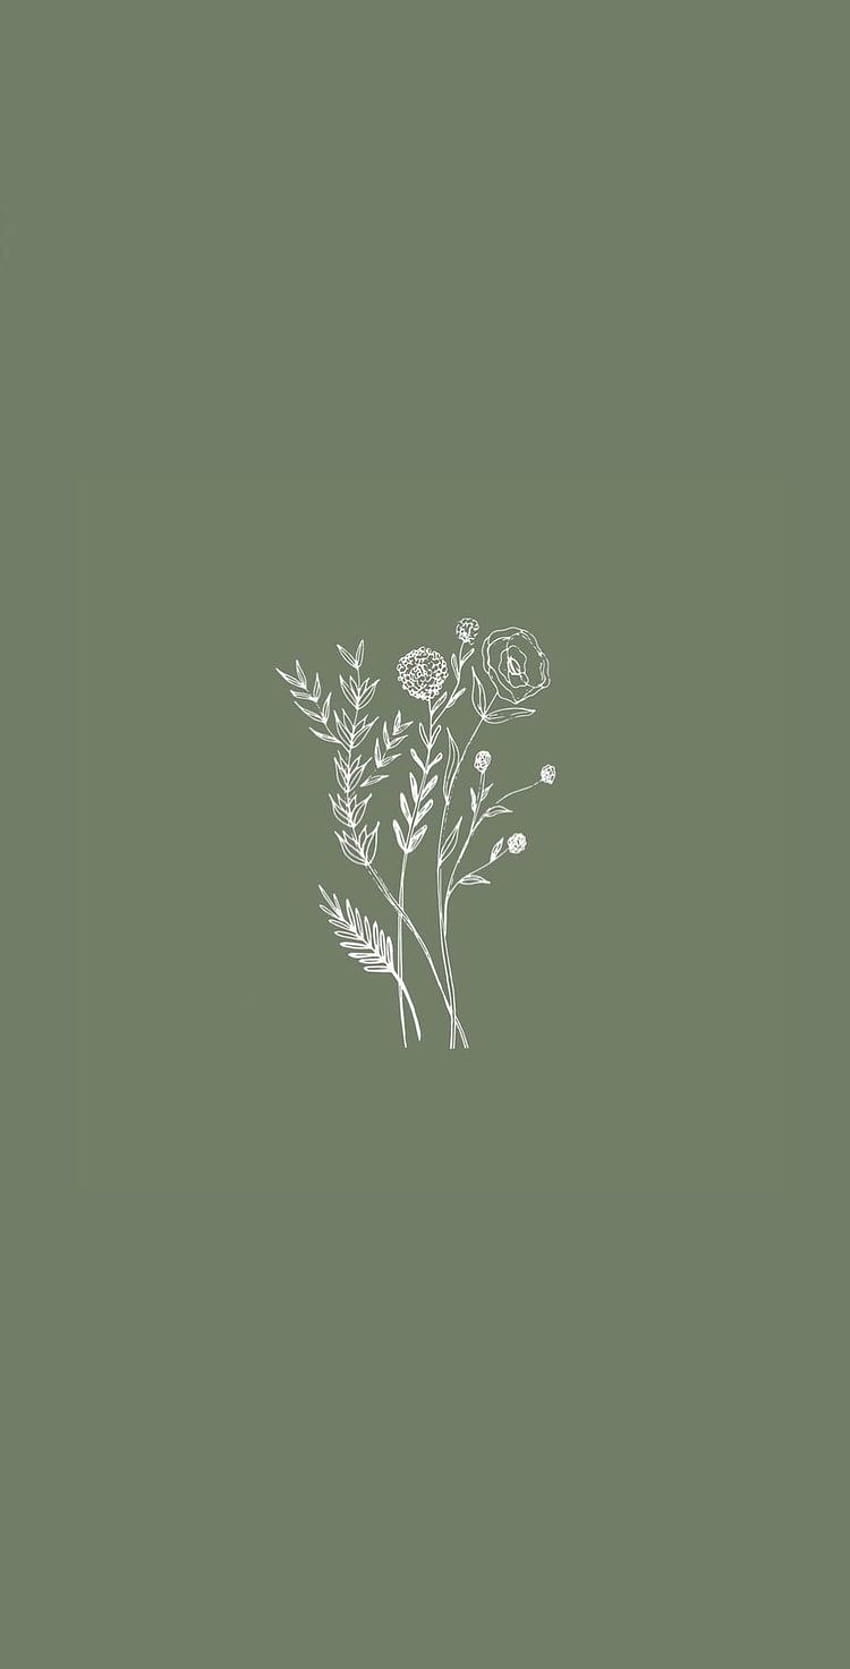 A floral logo design on green background - Spring